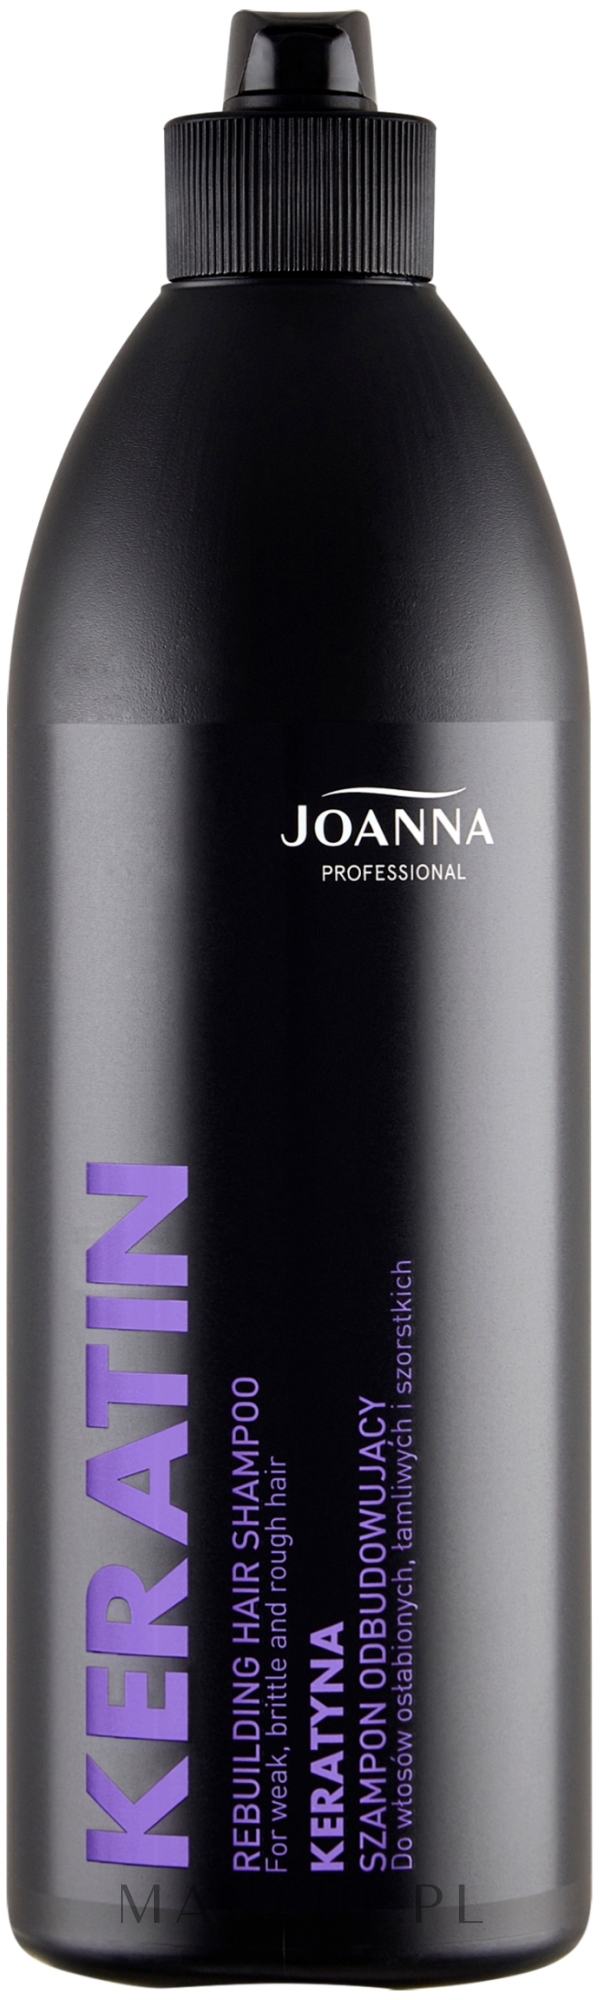 joanna proffesional szampon z olejkiem arganowym opinie